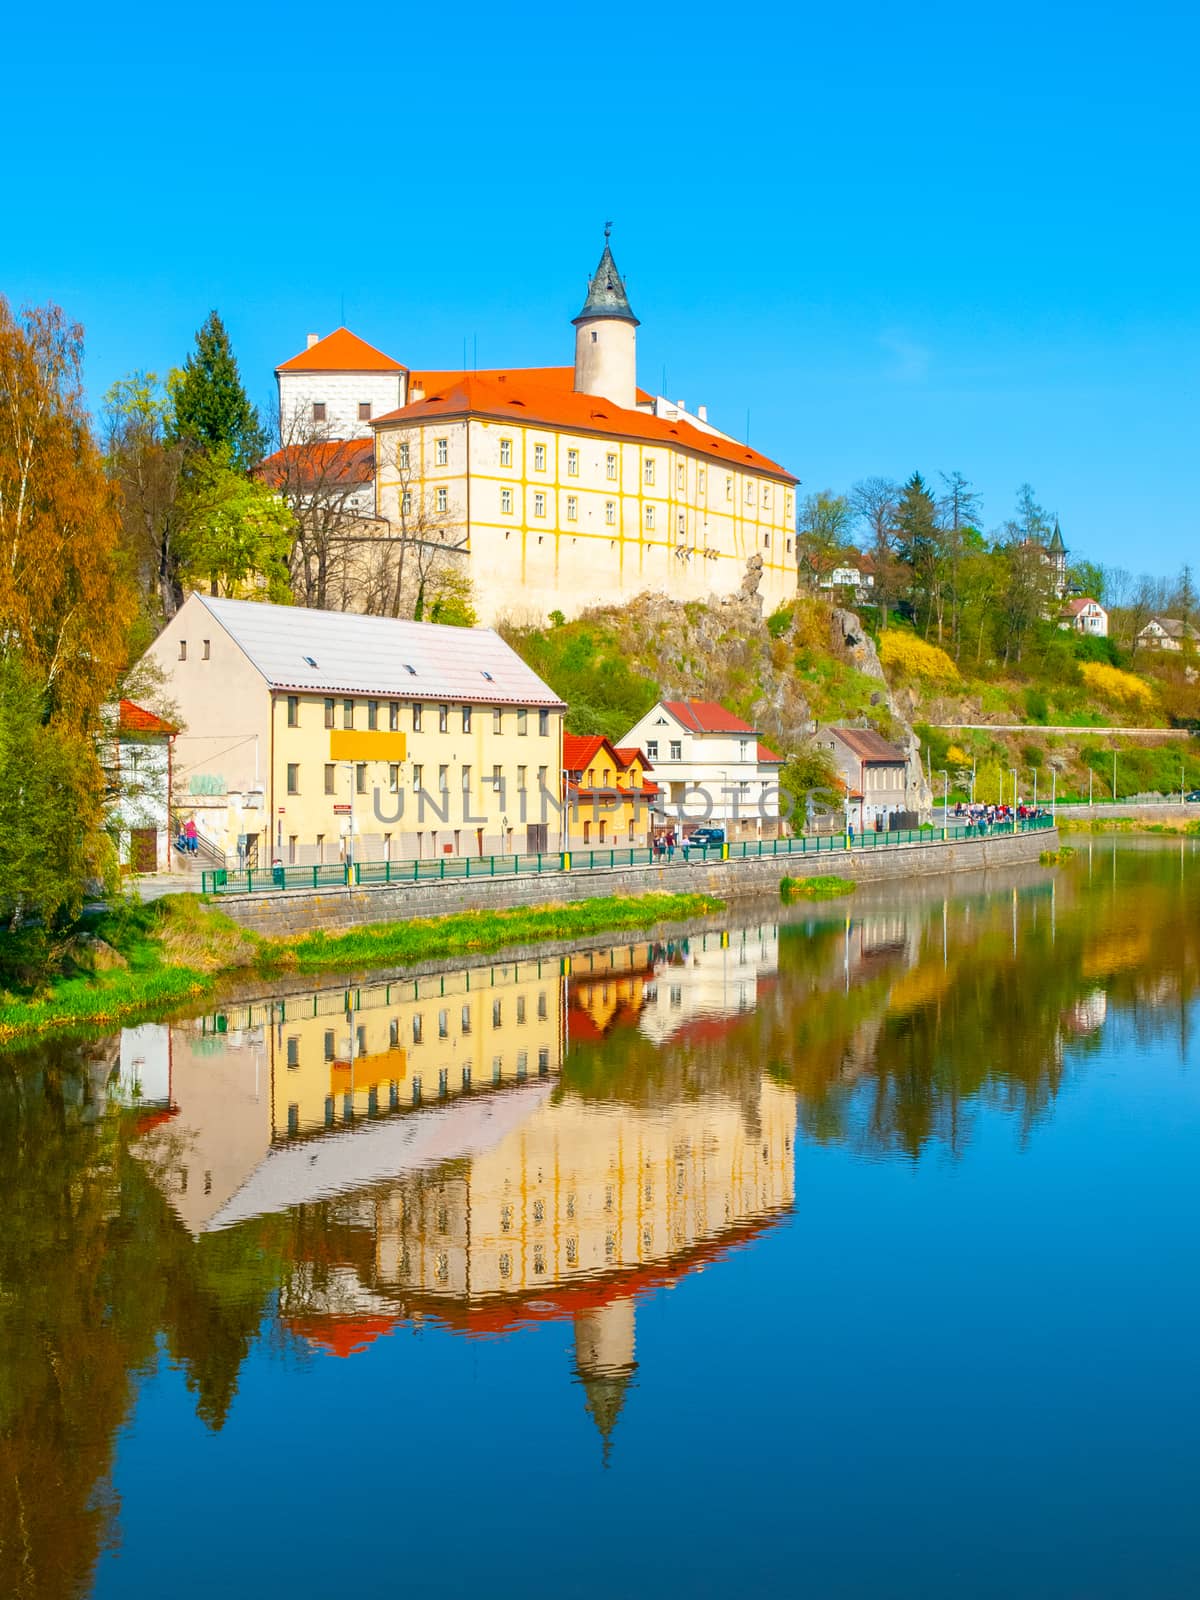 Medieval Castle Ledec nad Sazavou. Reflection in Sazava River, Czech Republic by pyty